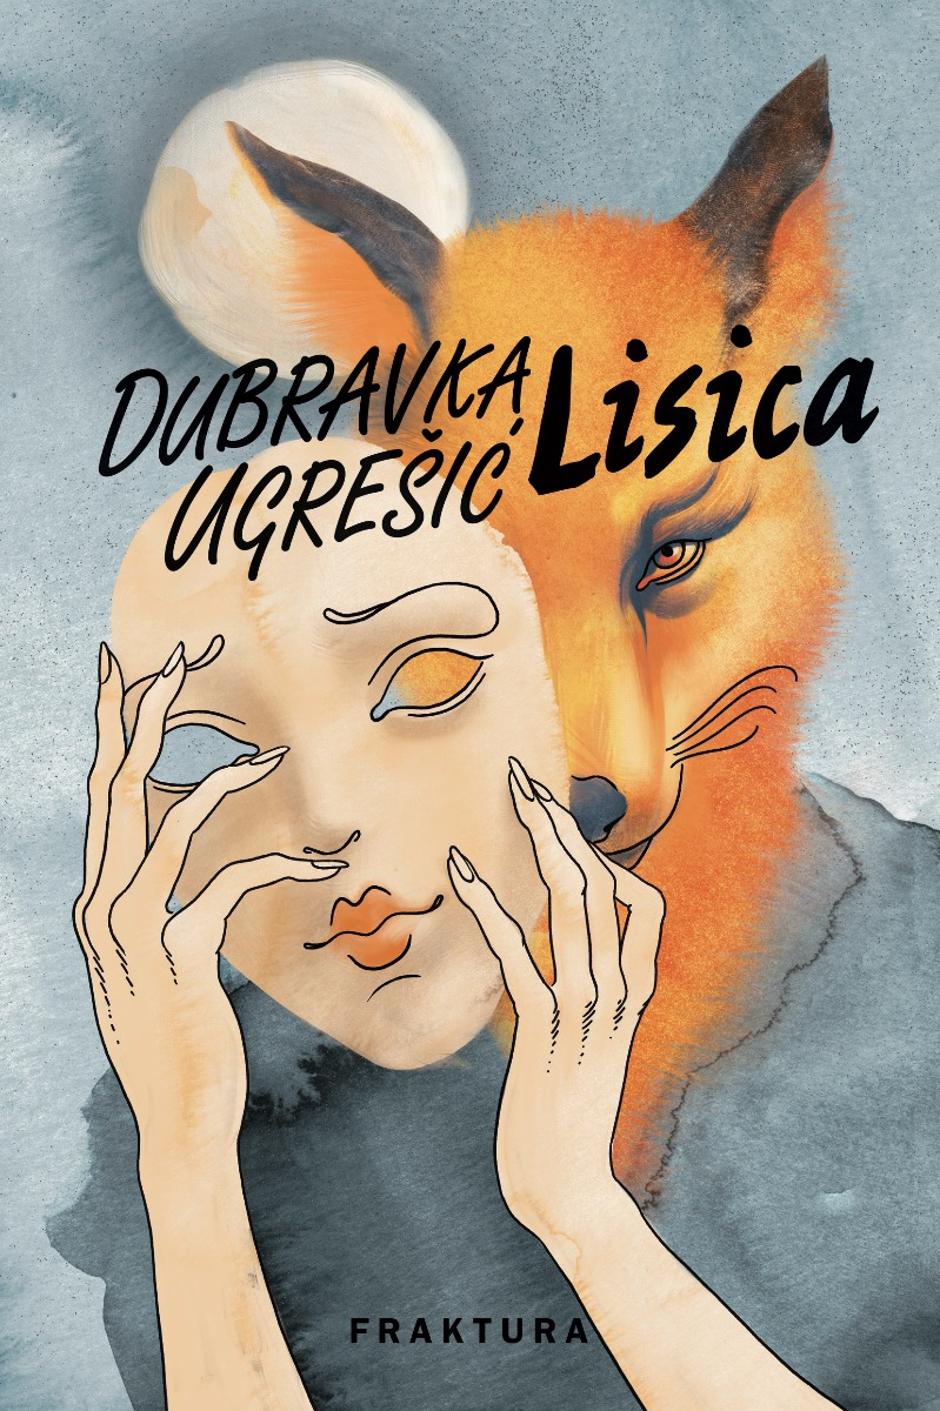 "Lisica", Dubravka Ugrešić | Author: Fraktura